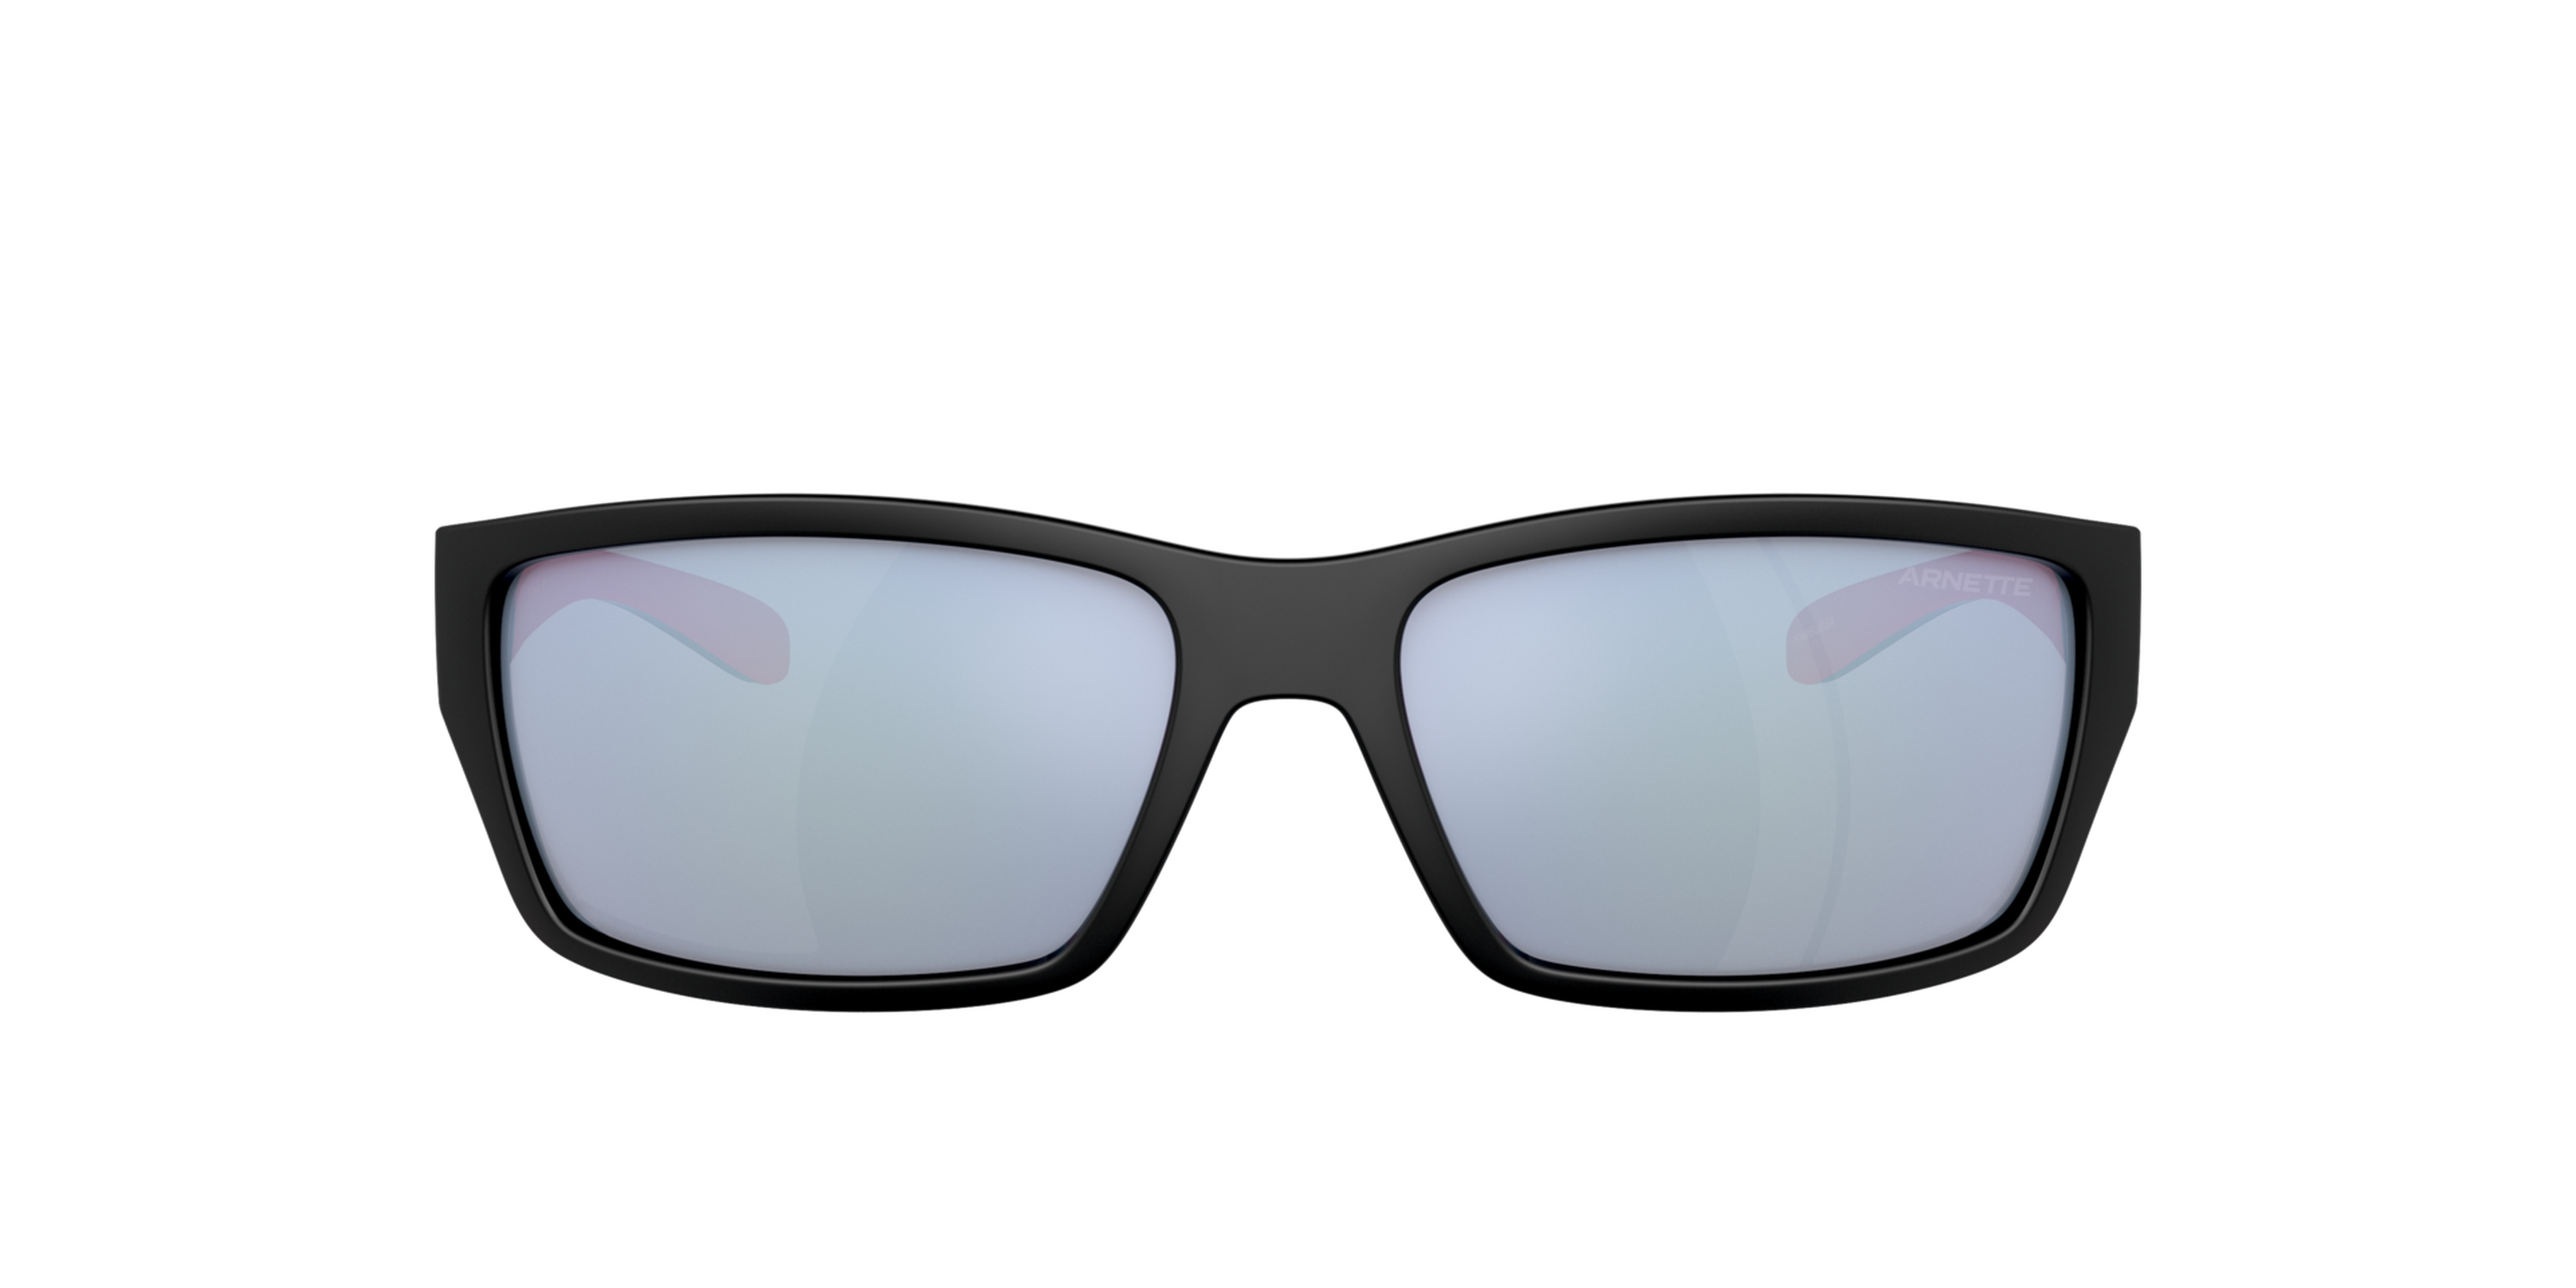 Das Bild zeigt die Sonnenbrille AN4336 27531U von der Marke Arnette in schwarz/rosa.